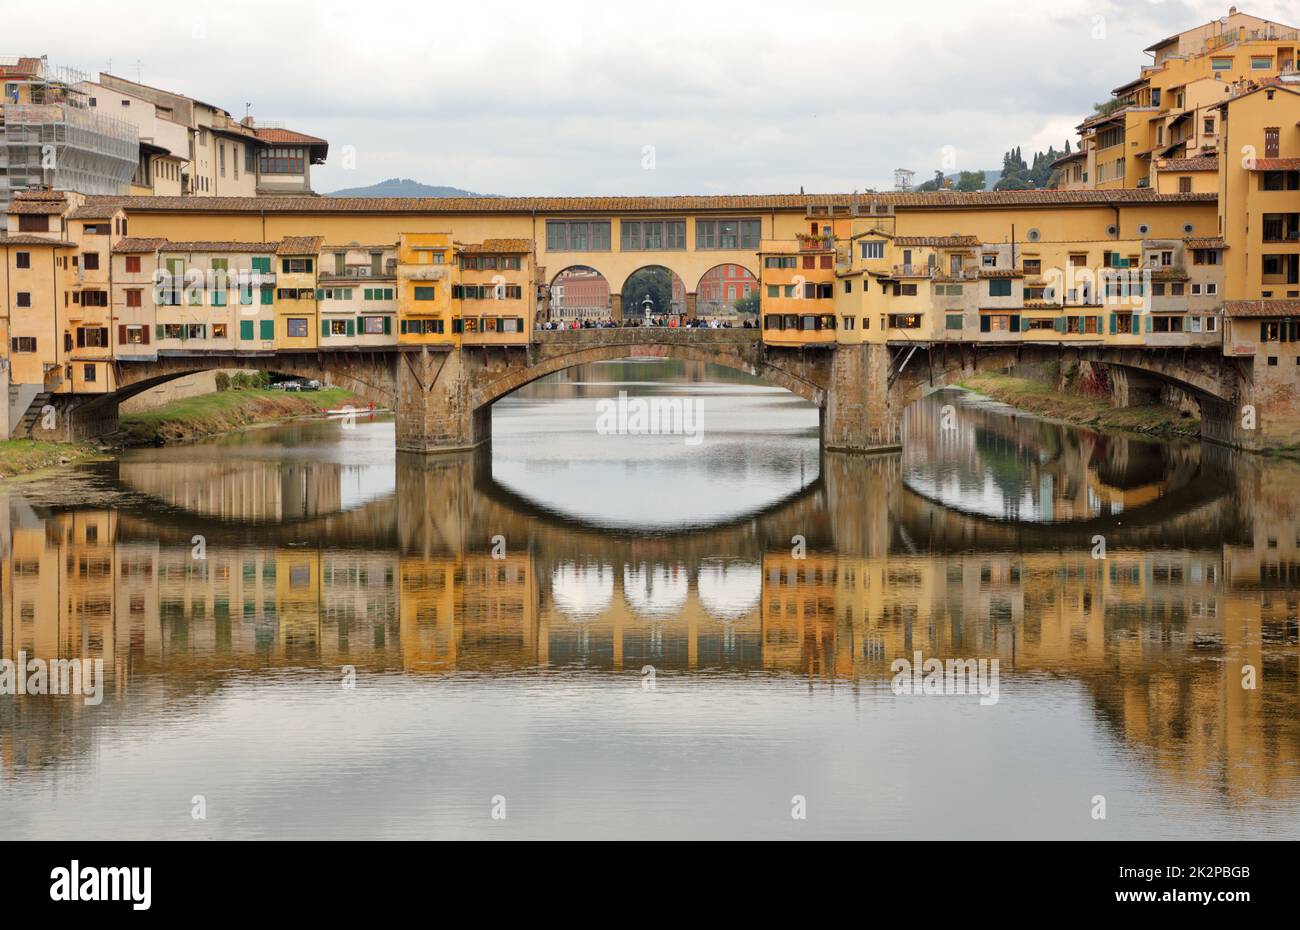 Il famoso ponte Vecchio sul fiume Arno a Firenze, in una giornata nuvolosa Foto Stock